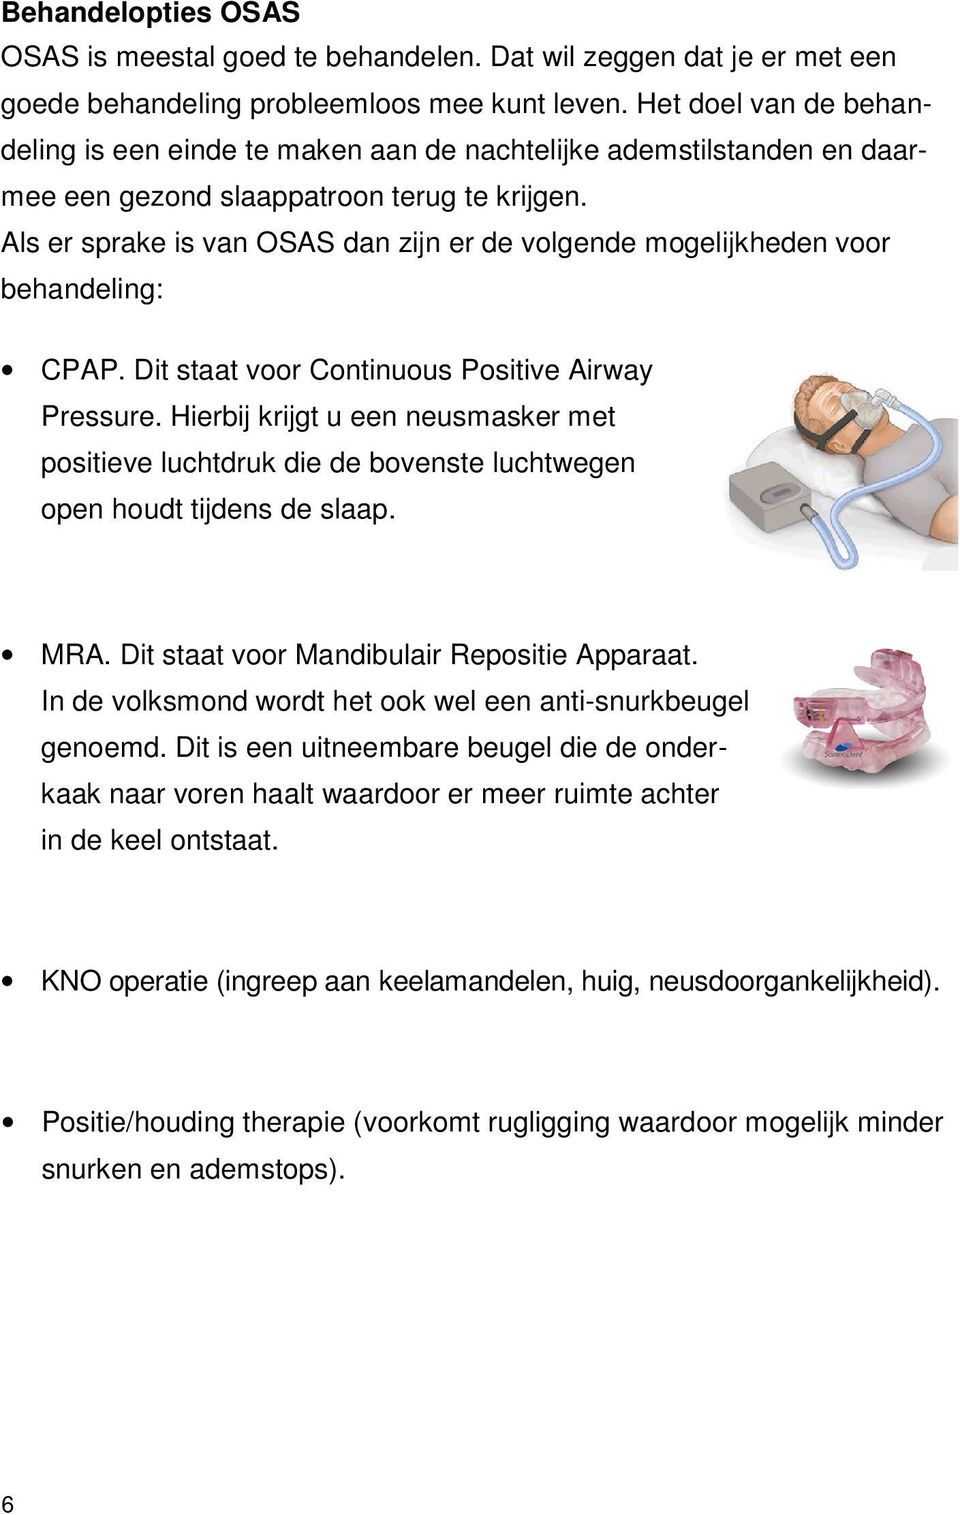 Als er sprake is van OSAS dan zijn er de volgende mogelijkheden voor behandeling: CPAP. Dit staat voor Continuous Positive Airway Pressure.